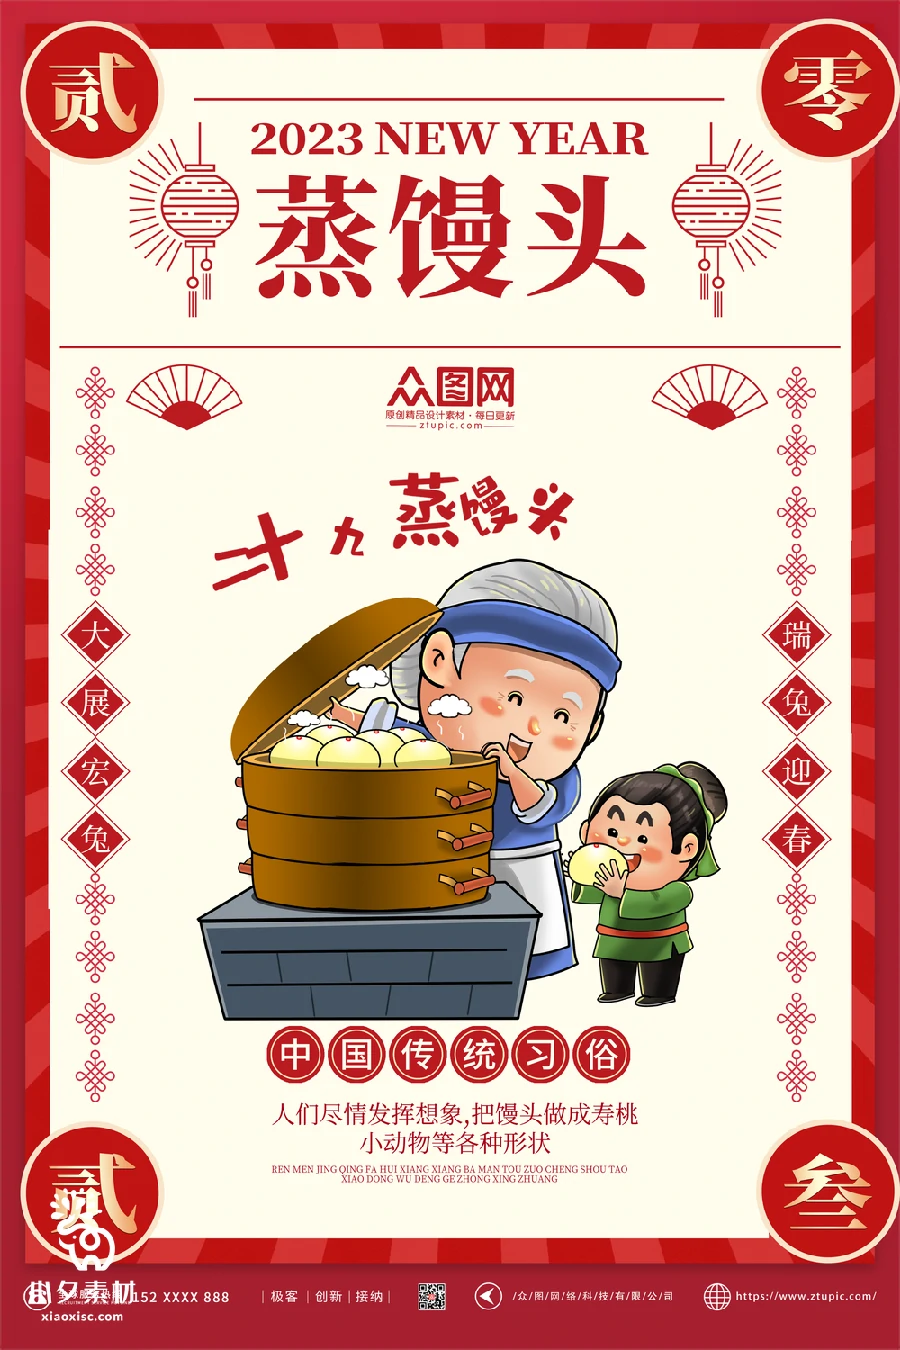 2023兔年新年传统节日年俗过年拜年习俗节气系列海报PSD设计素材【065】